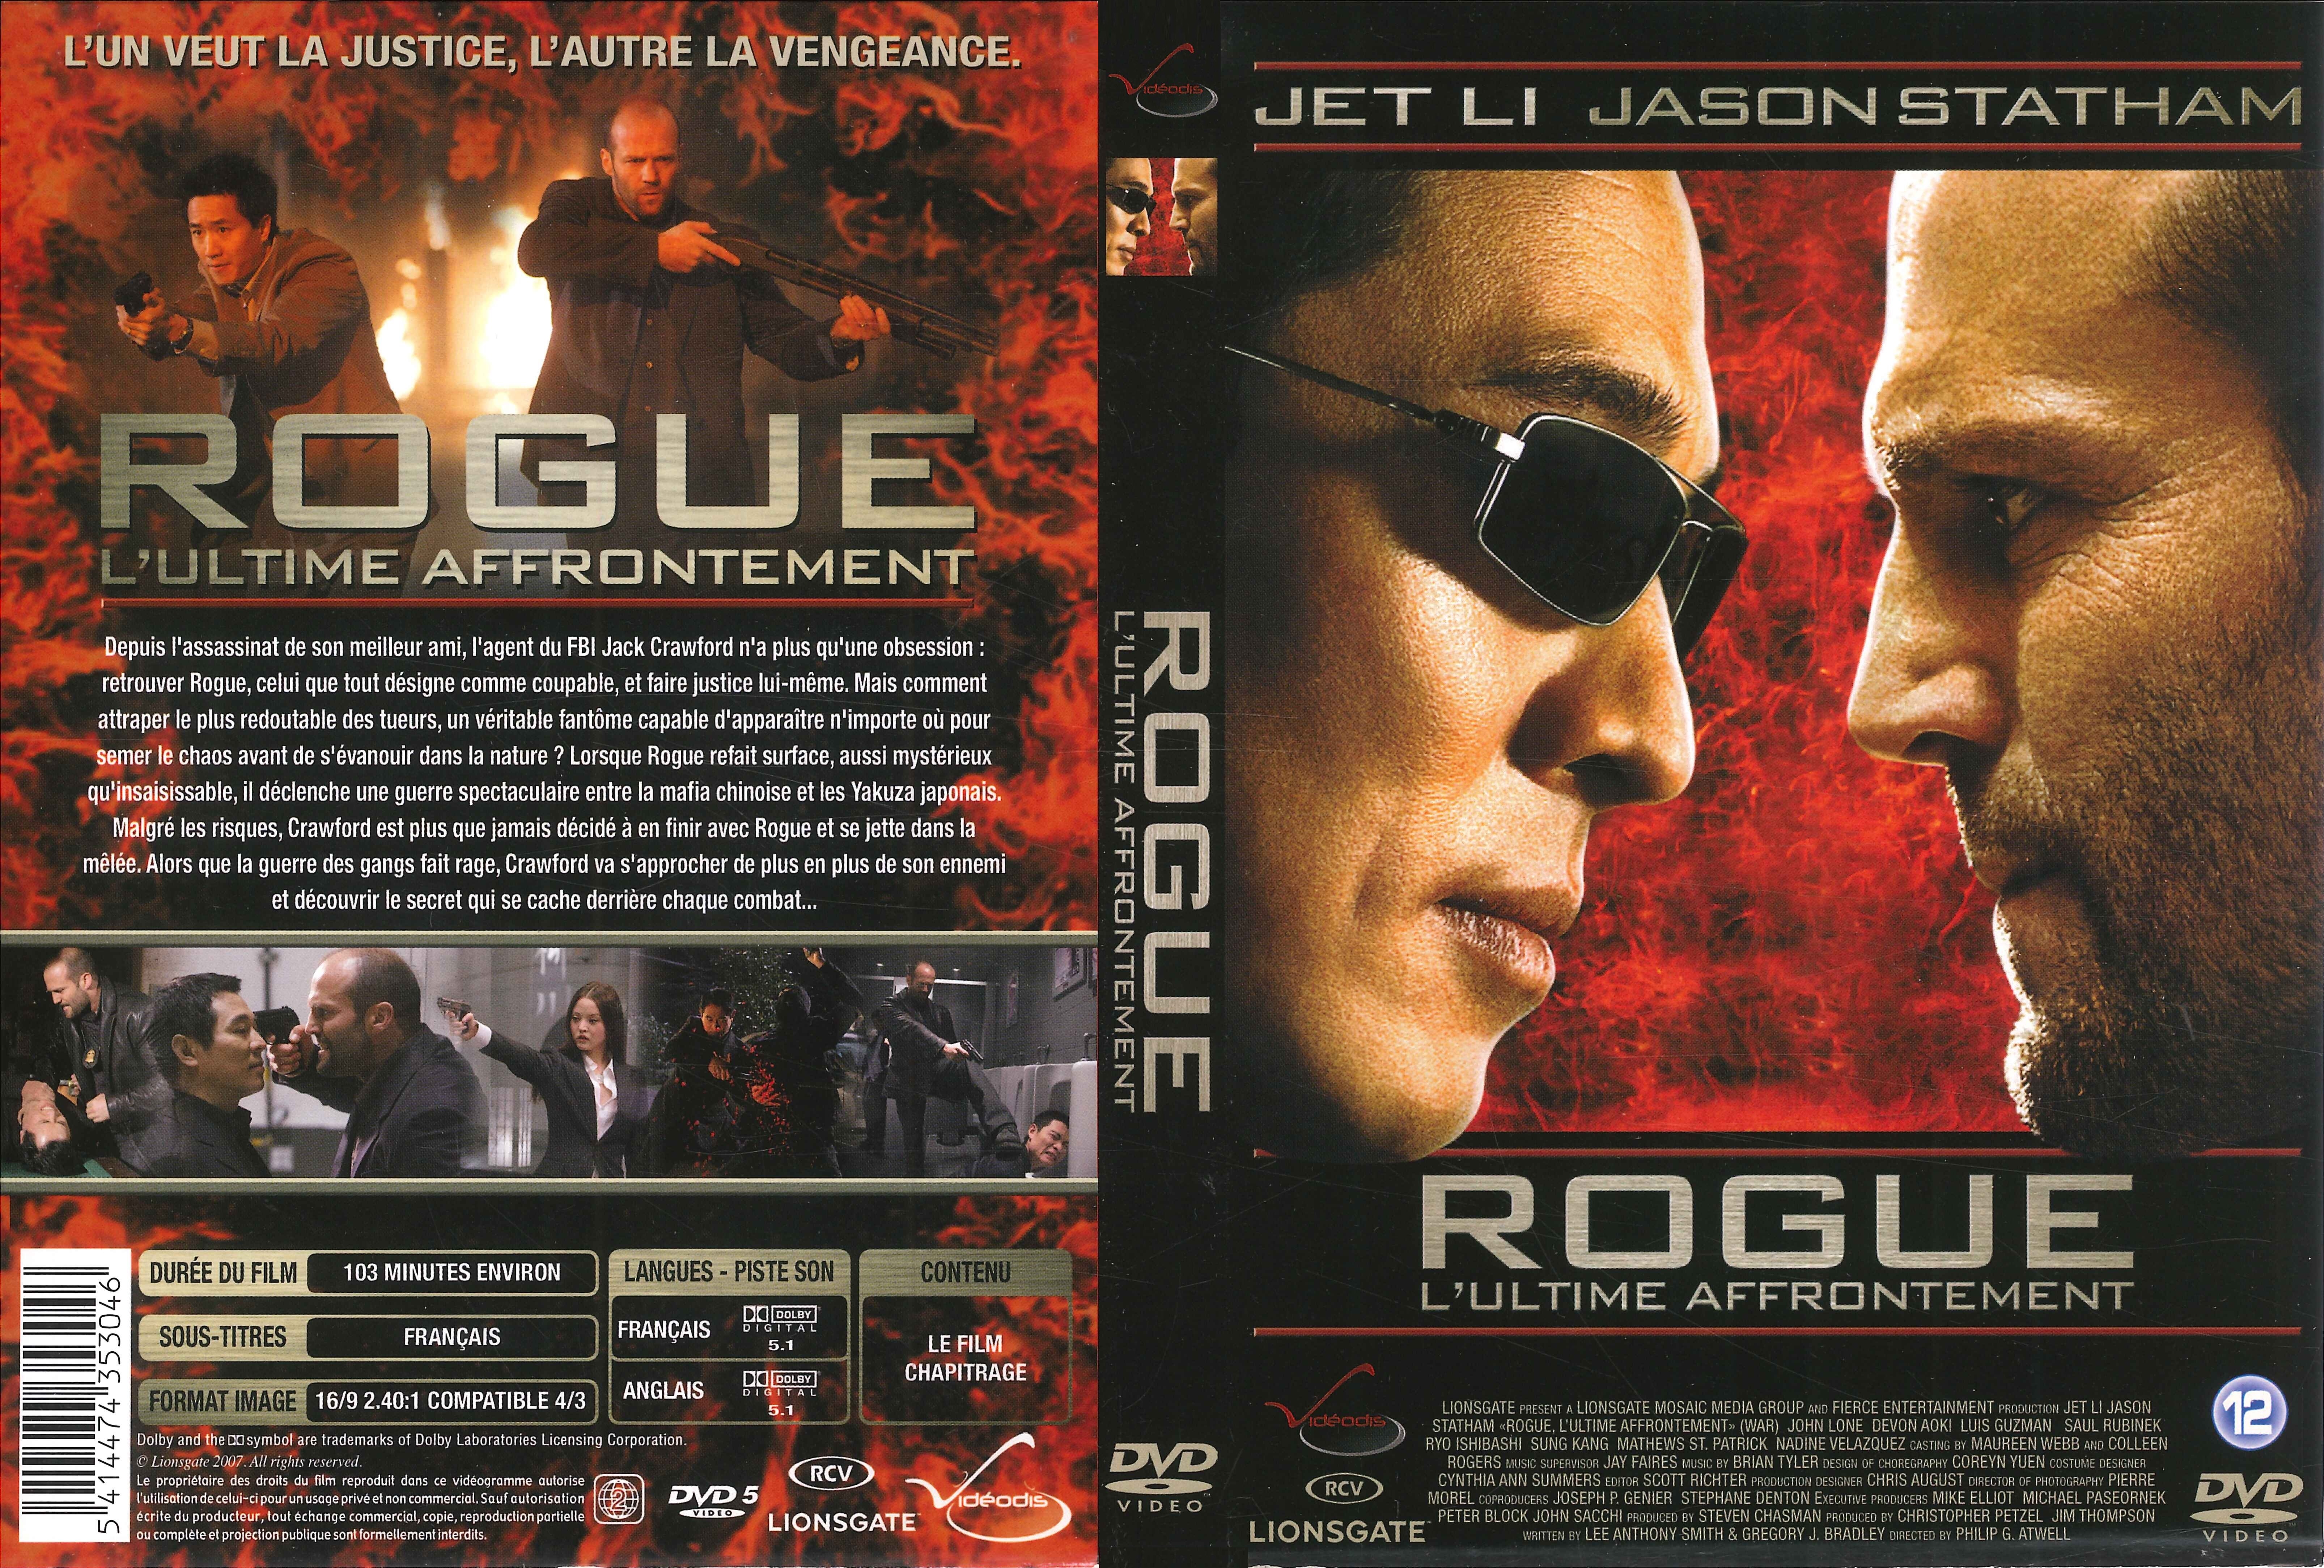 Jaquette DVD Rogue v3